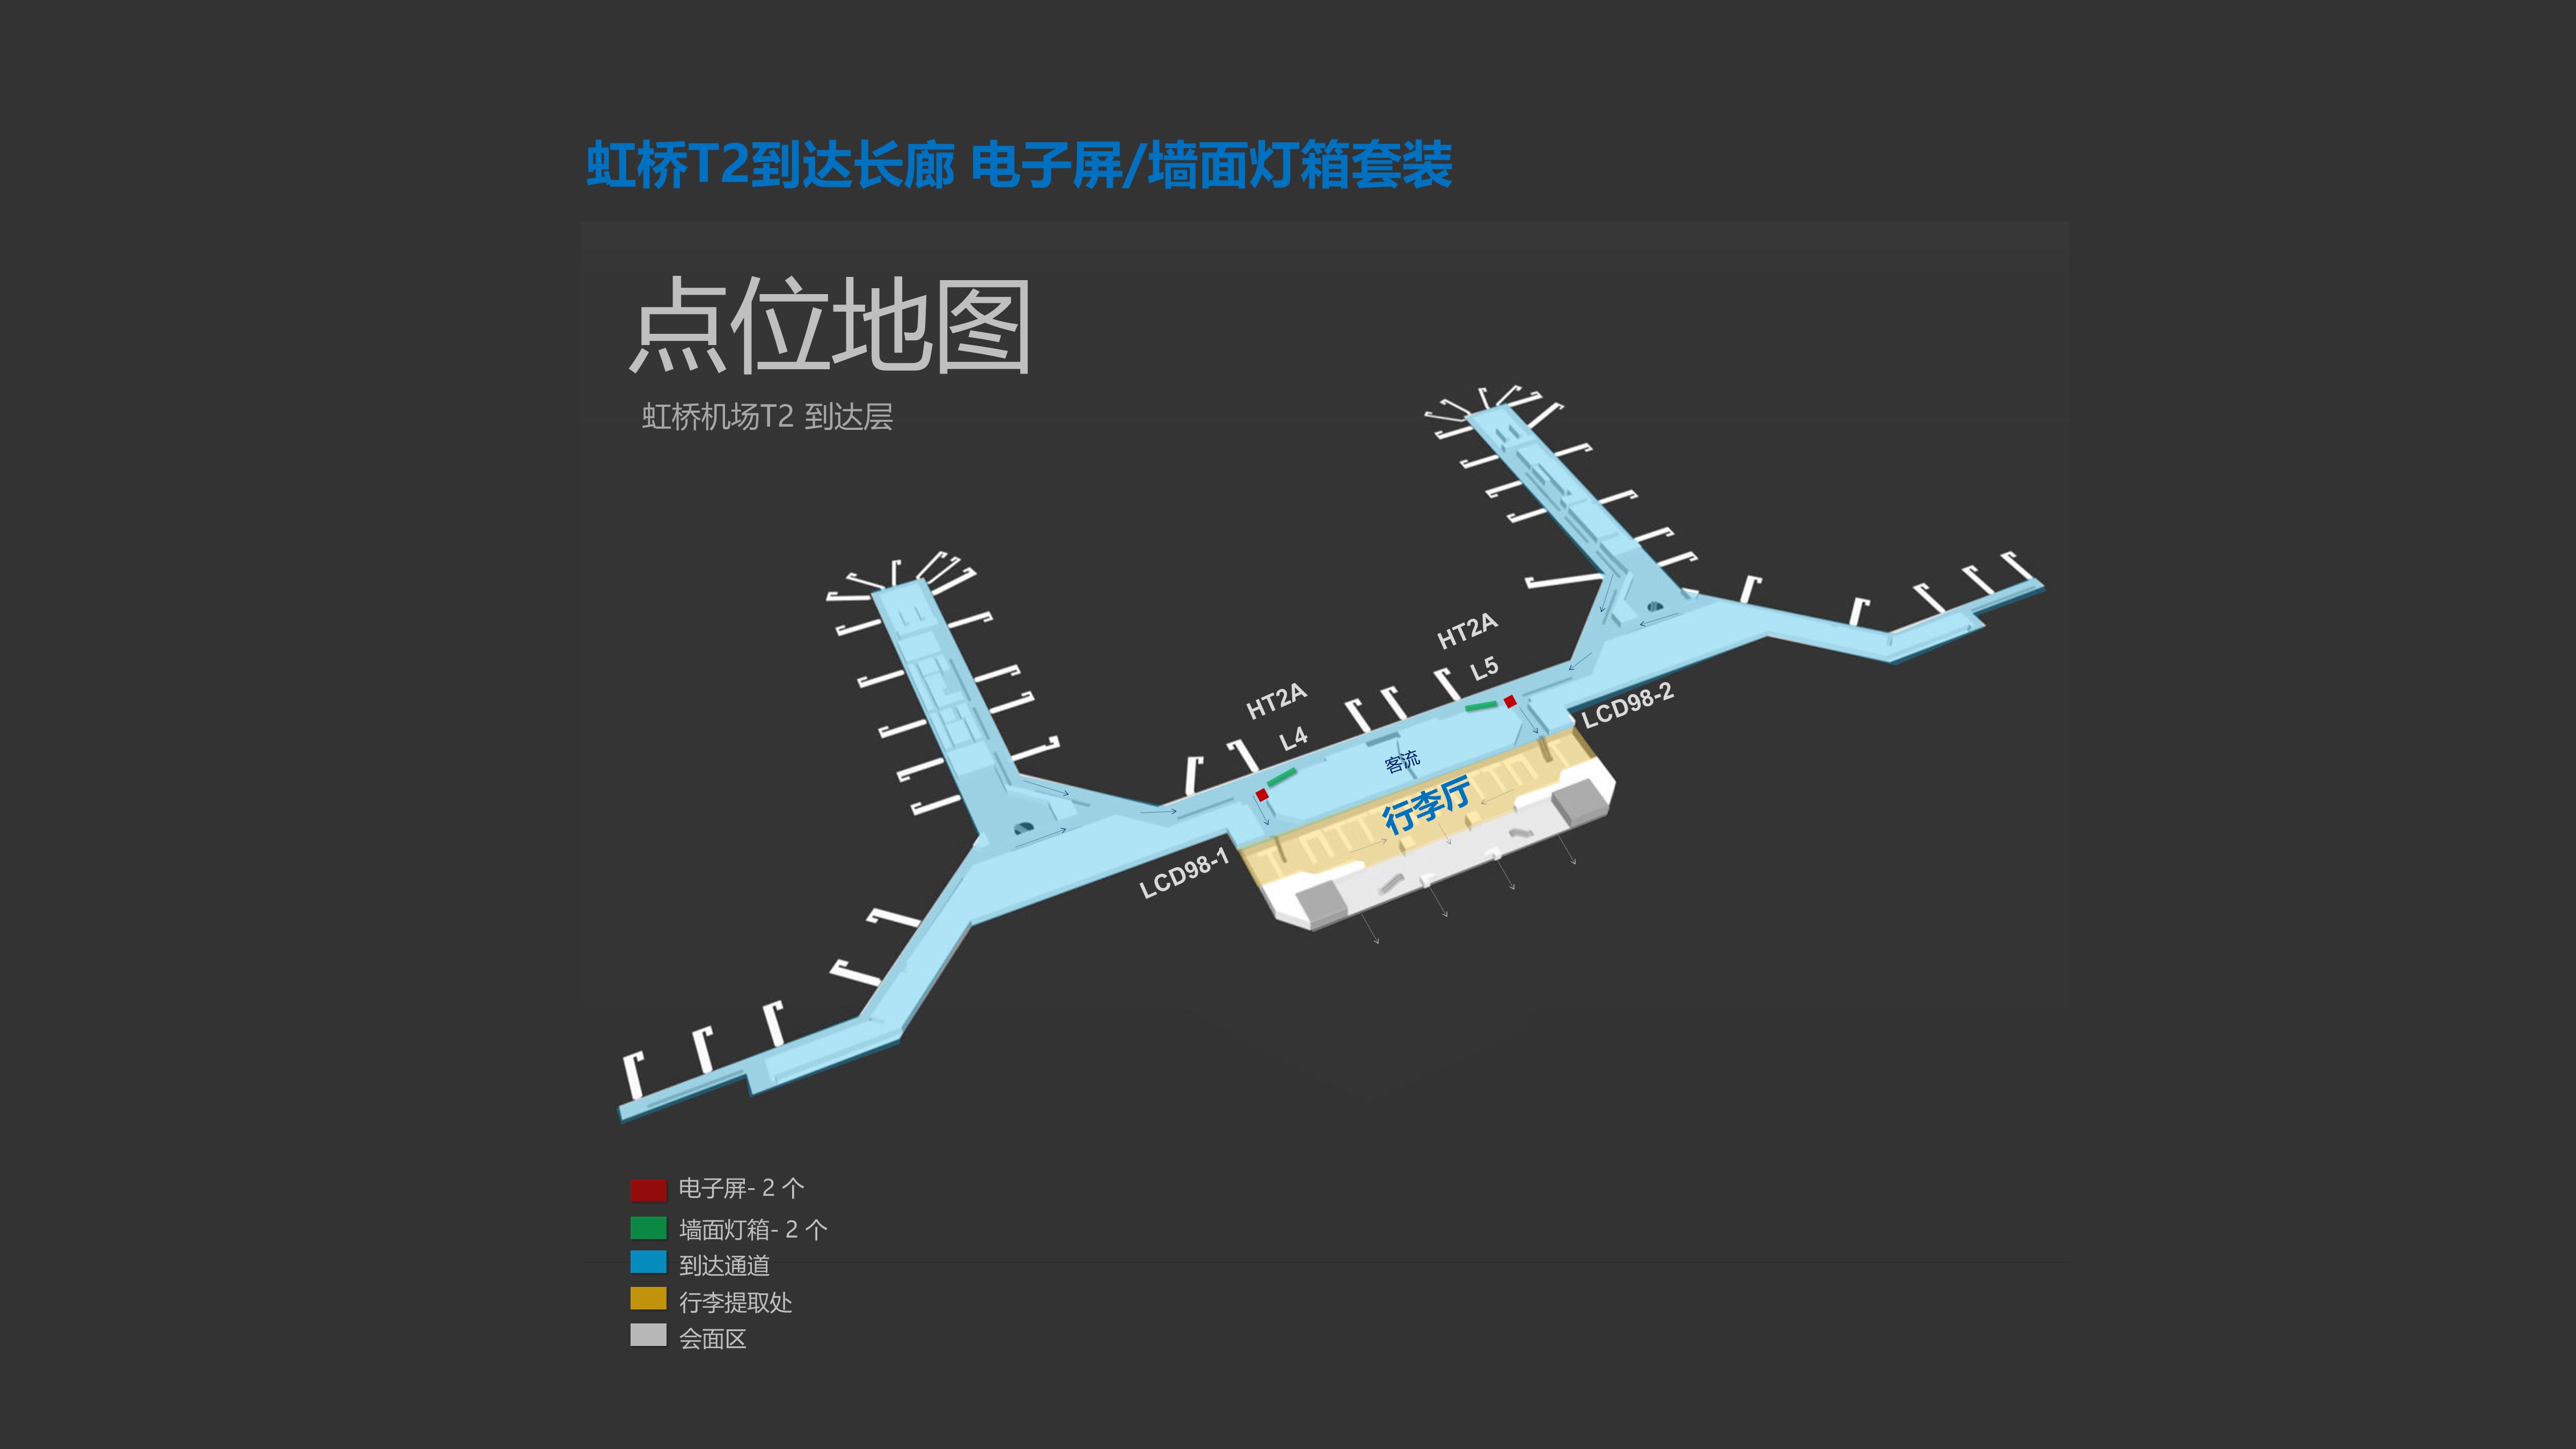 上海机场广告-虹桥T2到达长廊电子屏墙面灯箱点位图